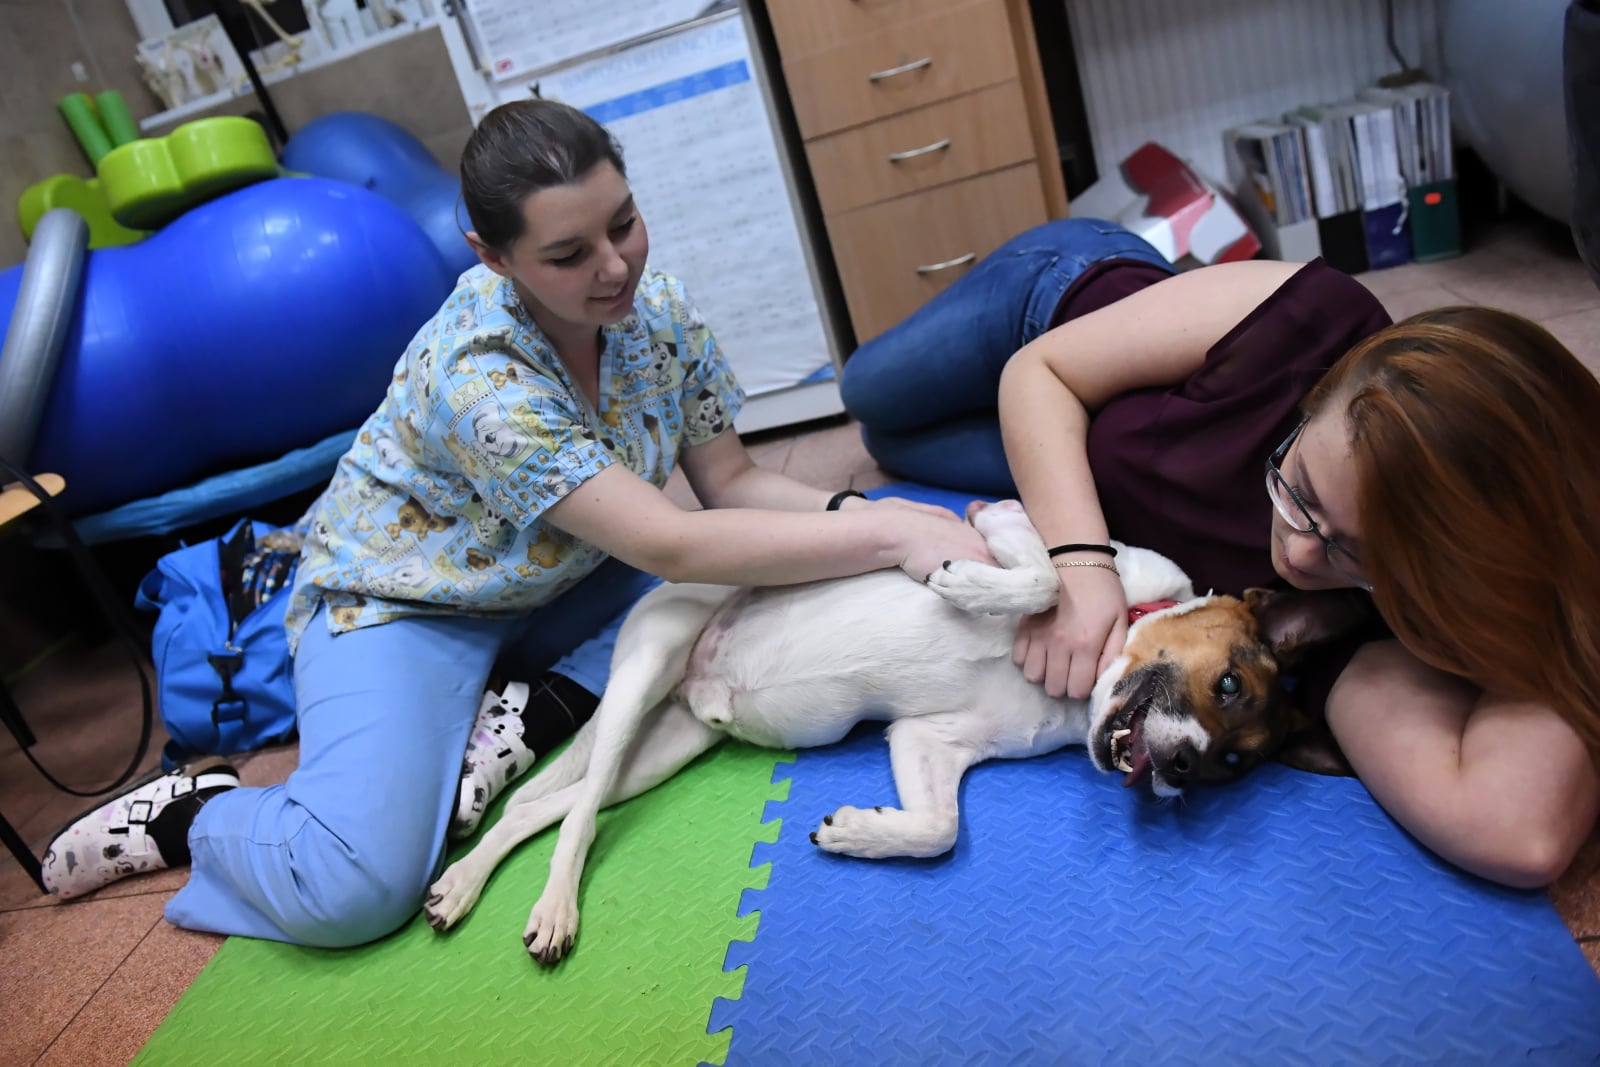 Rehabilitacja Lumena - niepełnosprawnego psa fot. PAP/Grzegorz Micha³owski